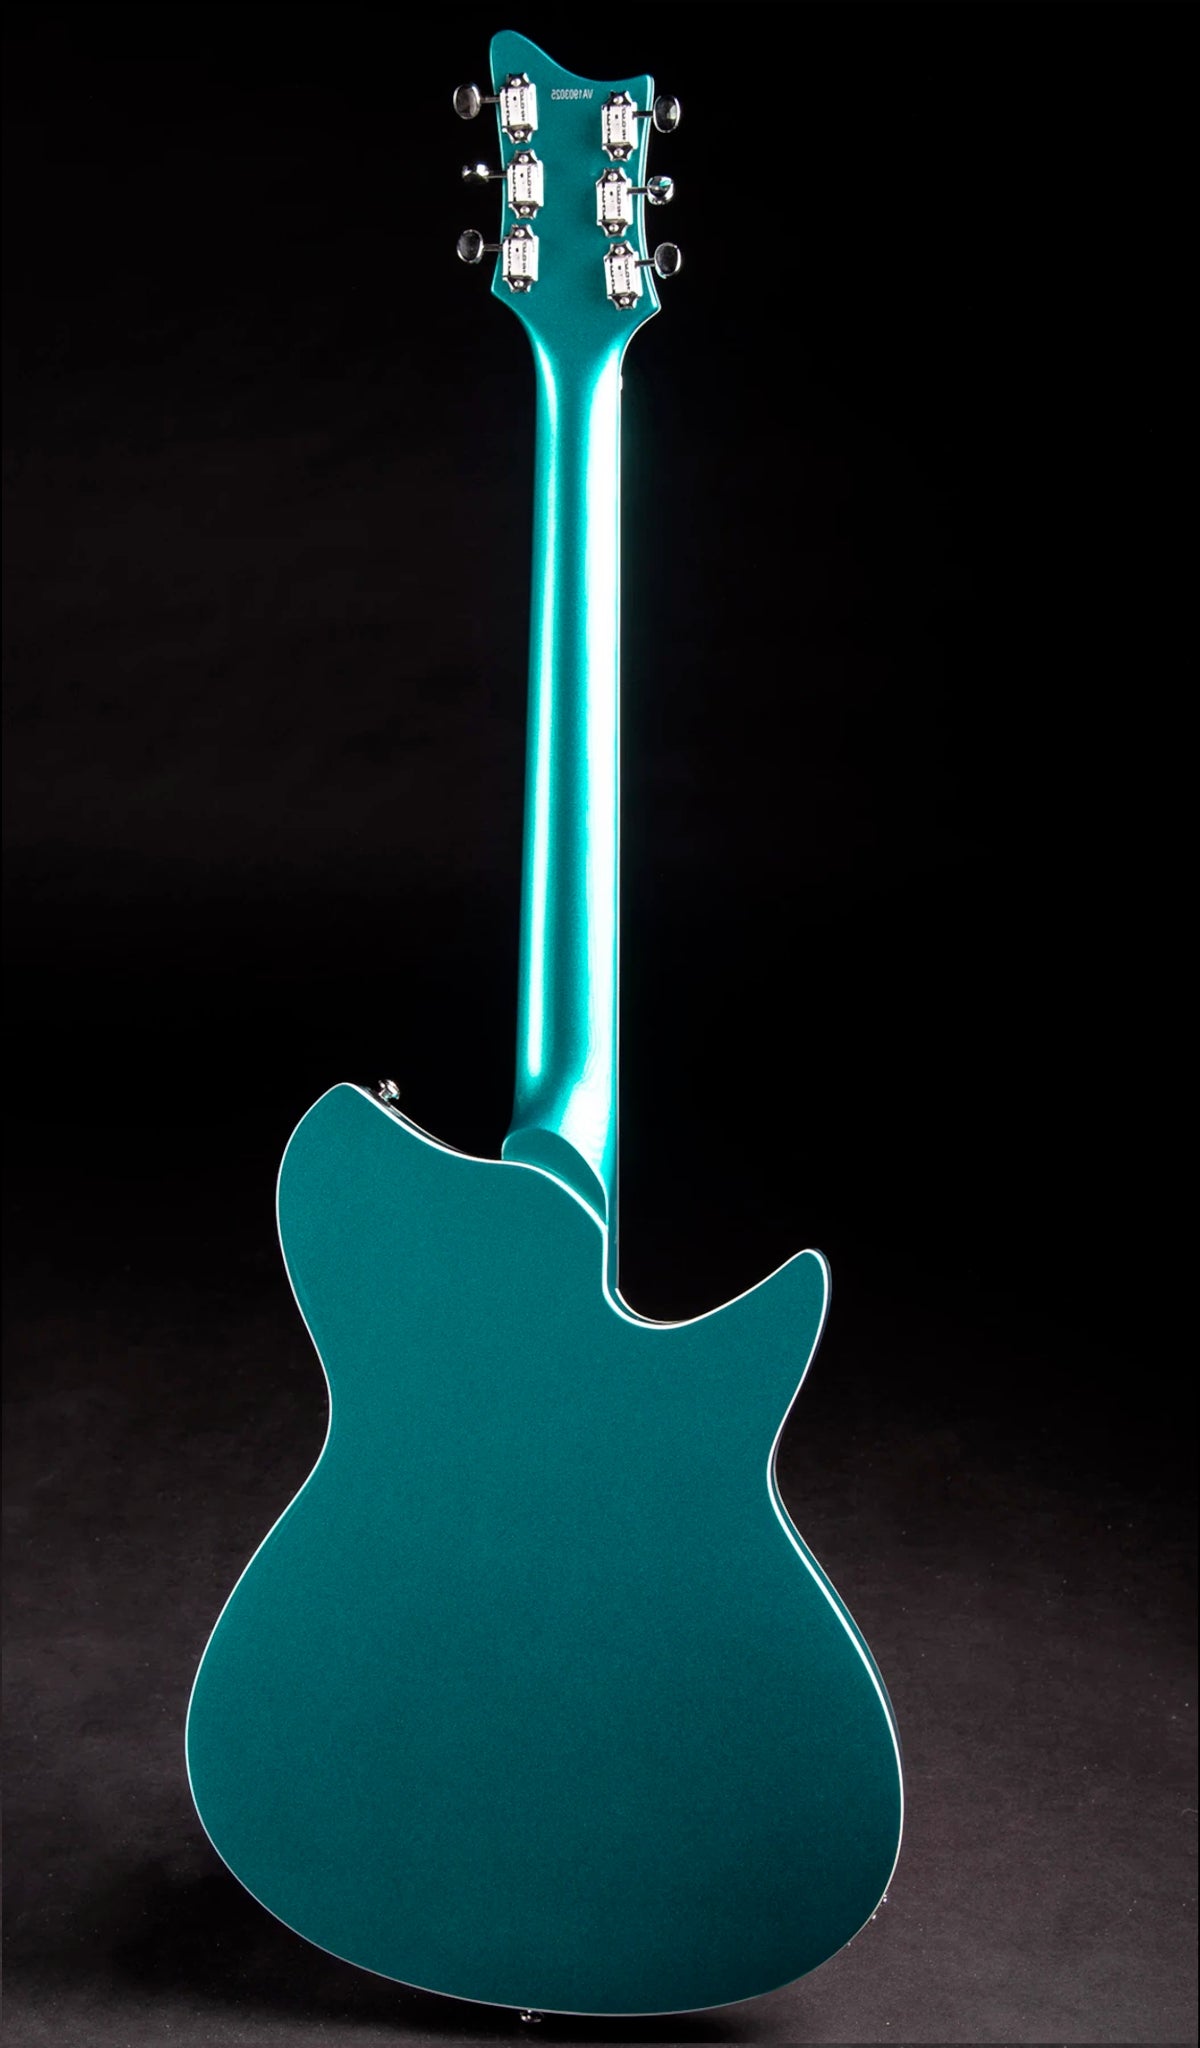 Eastwood Guitars Rivolta Combinata DLX Adriatic Blue Metallic #color_adriatic-blue-metallic